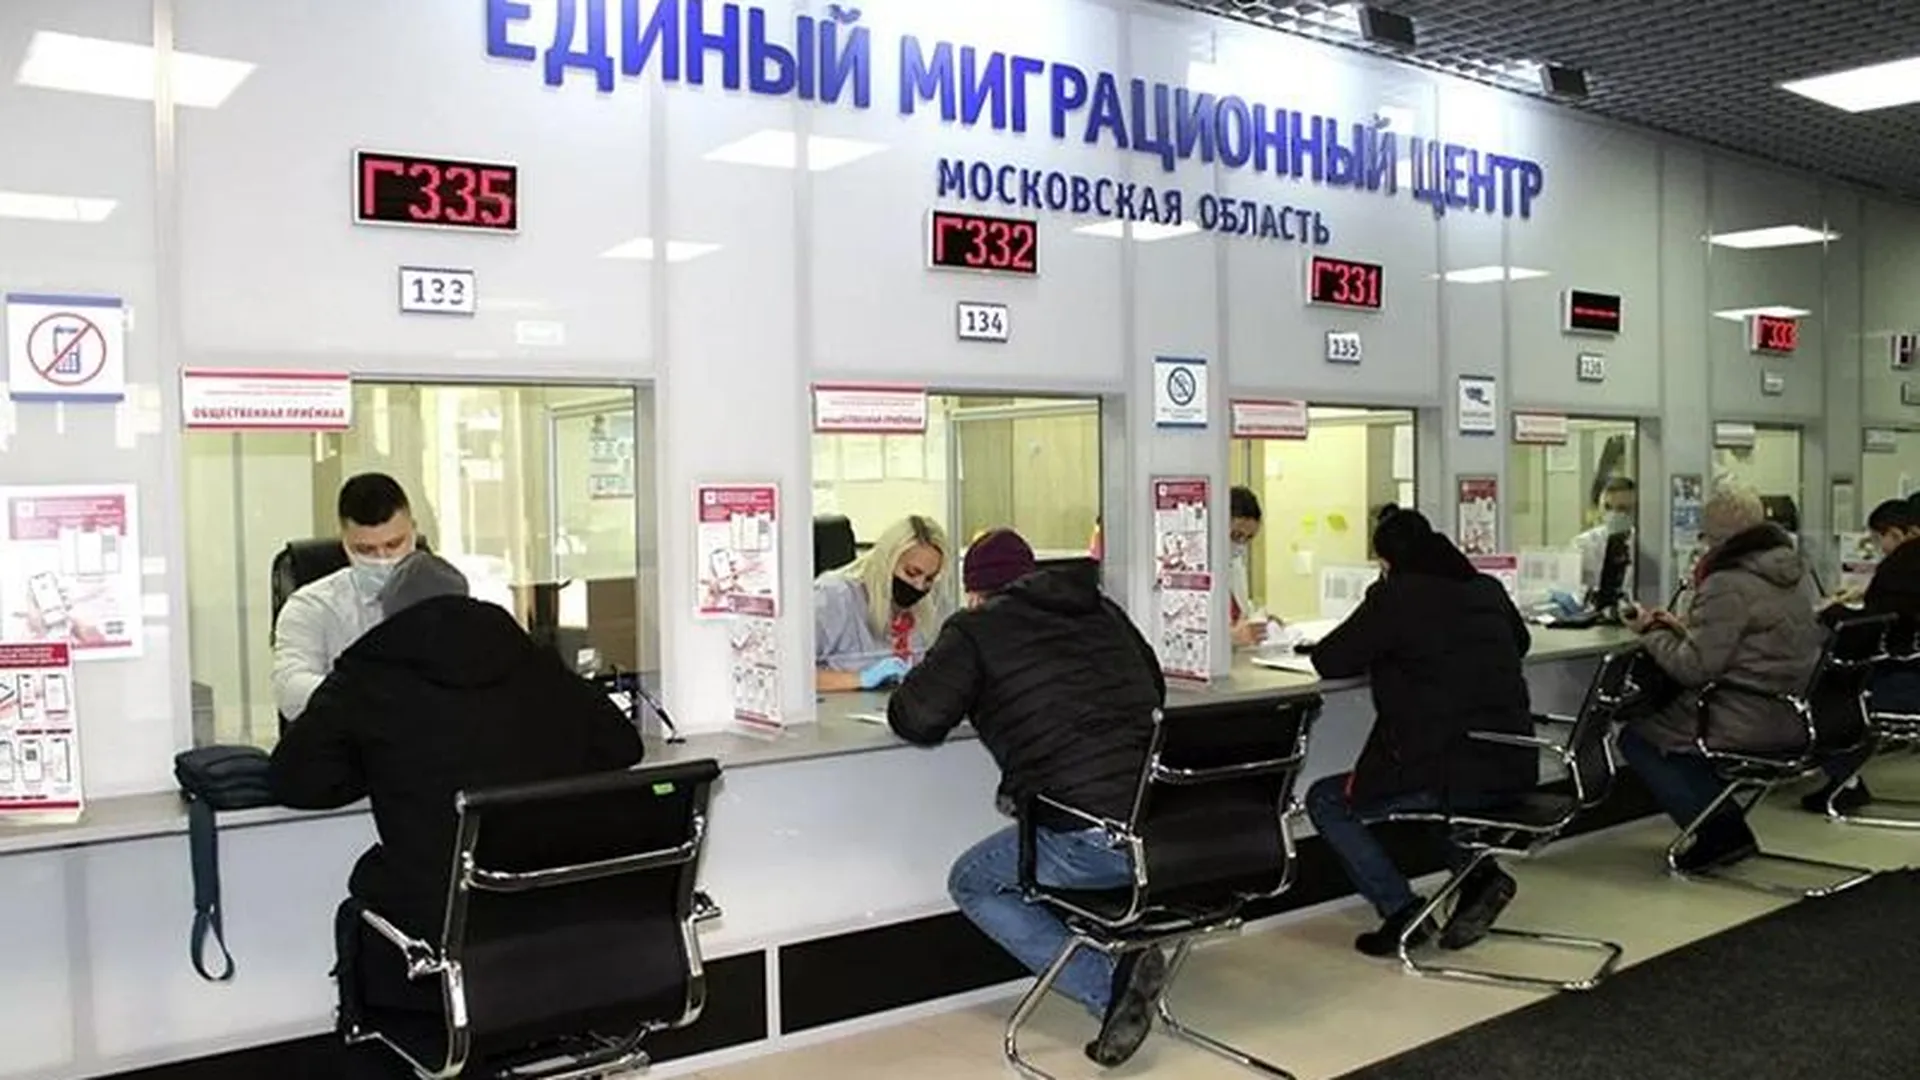 Единый миграционный центр переедет из Путилкова в Новую Москву 